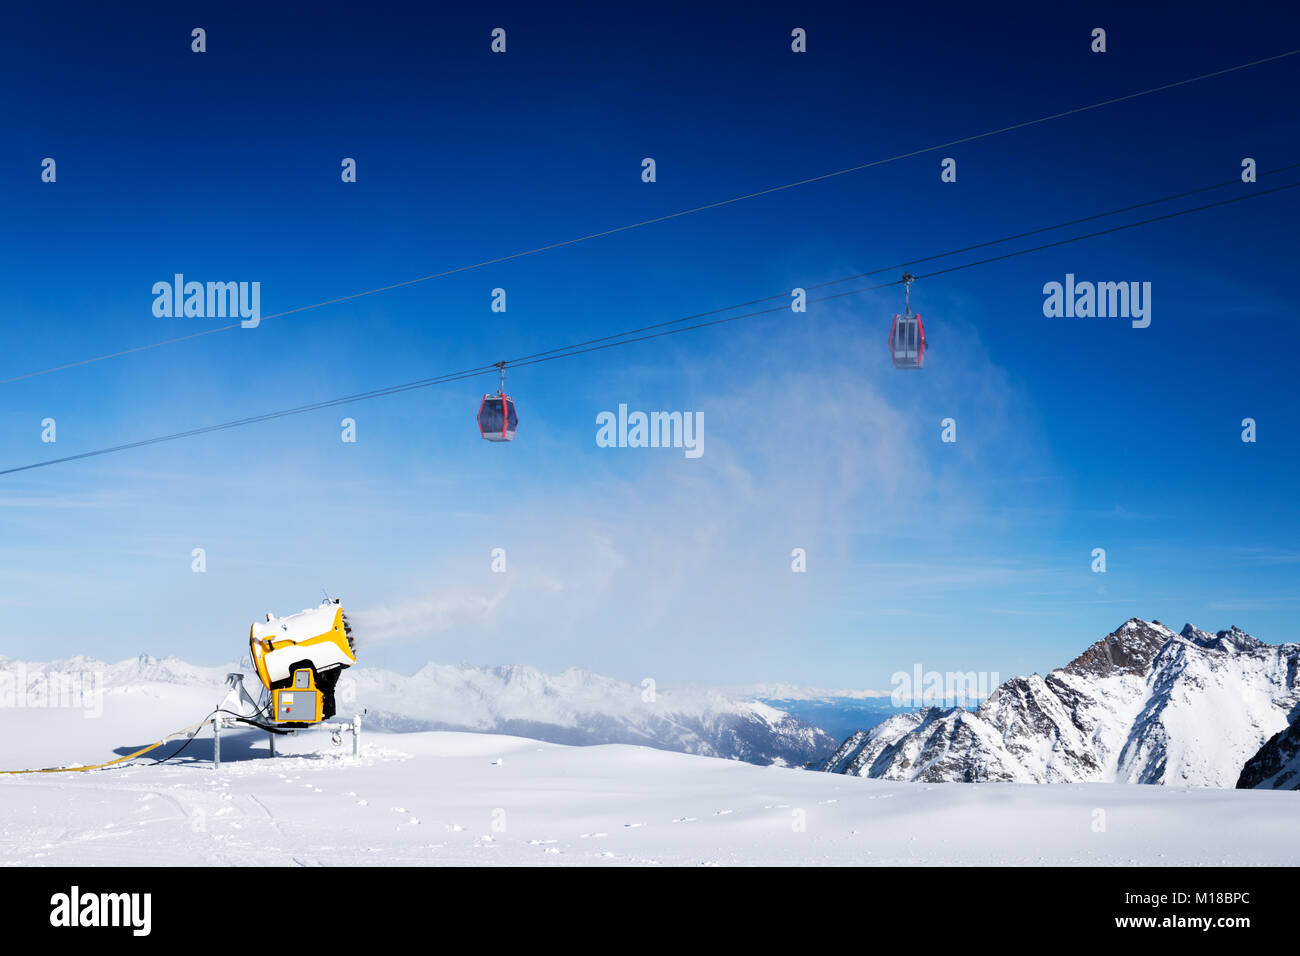 Schneekanone gegen den blauen sonnigen Himmel bei Ski Resort arbeiten Stockfoto